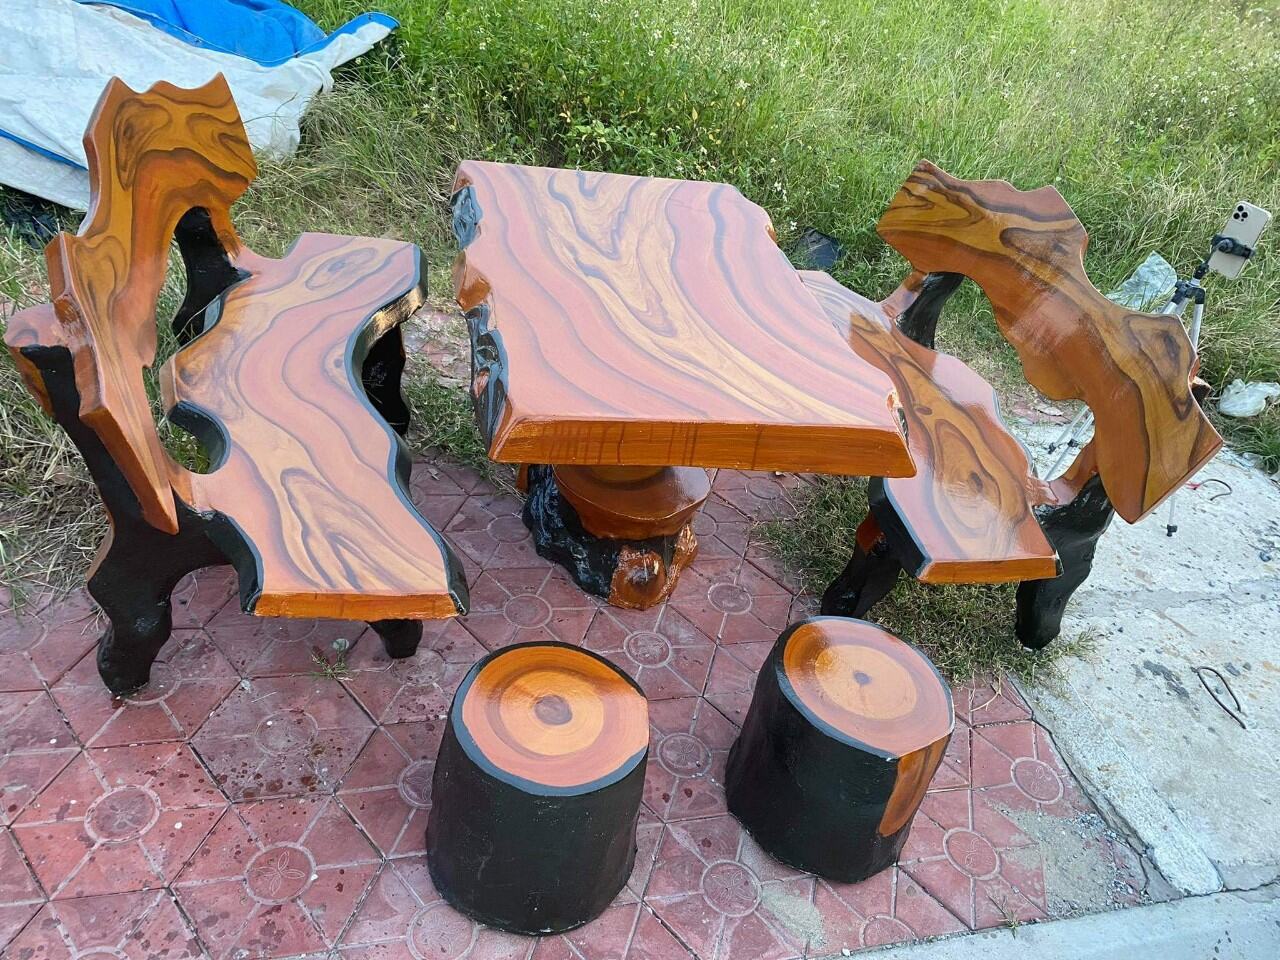 bàn ghế sân vườn